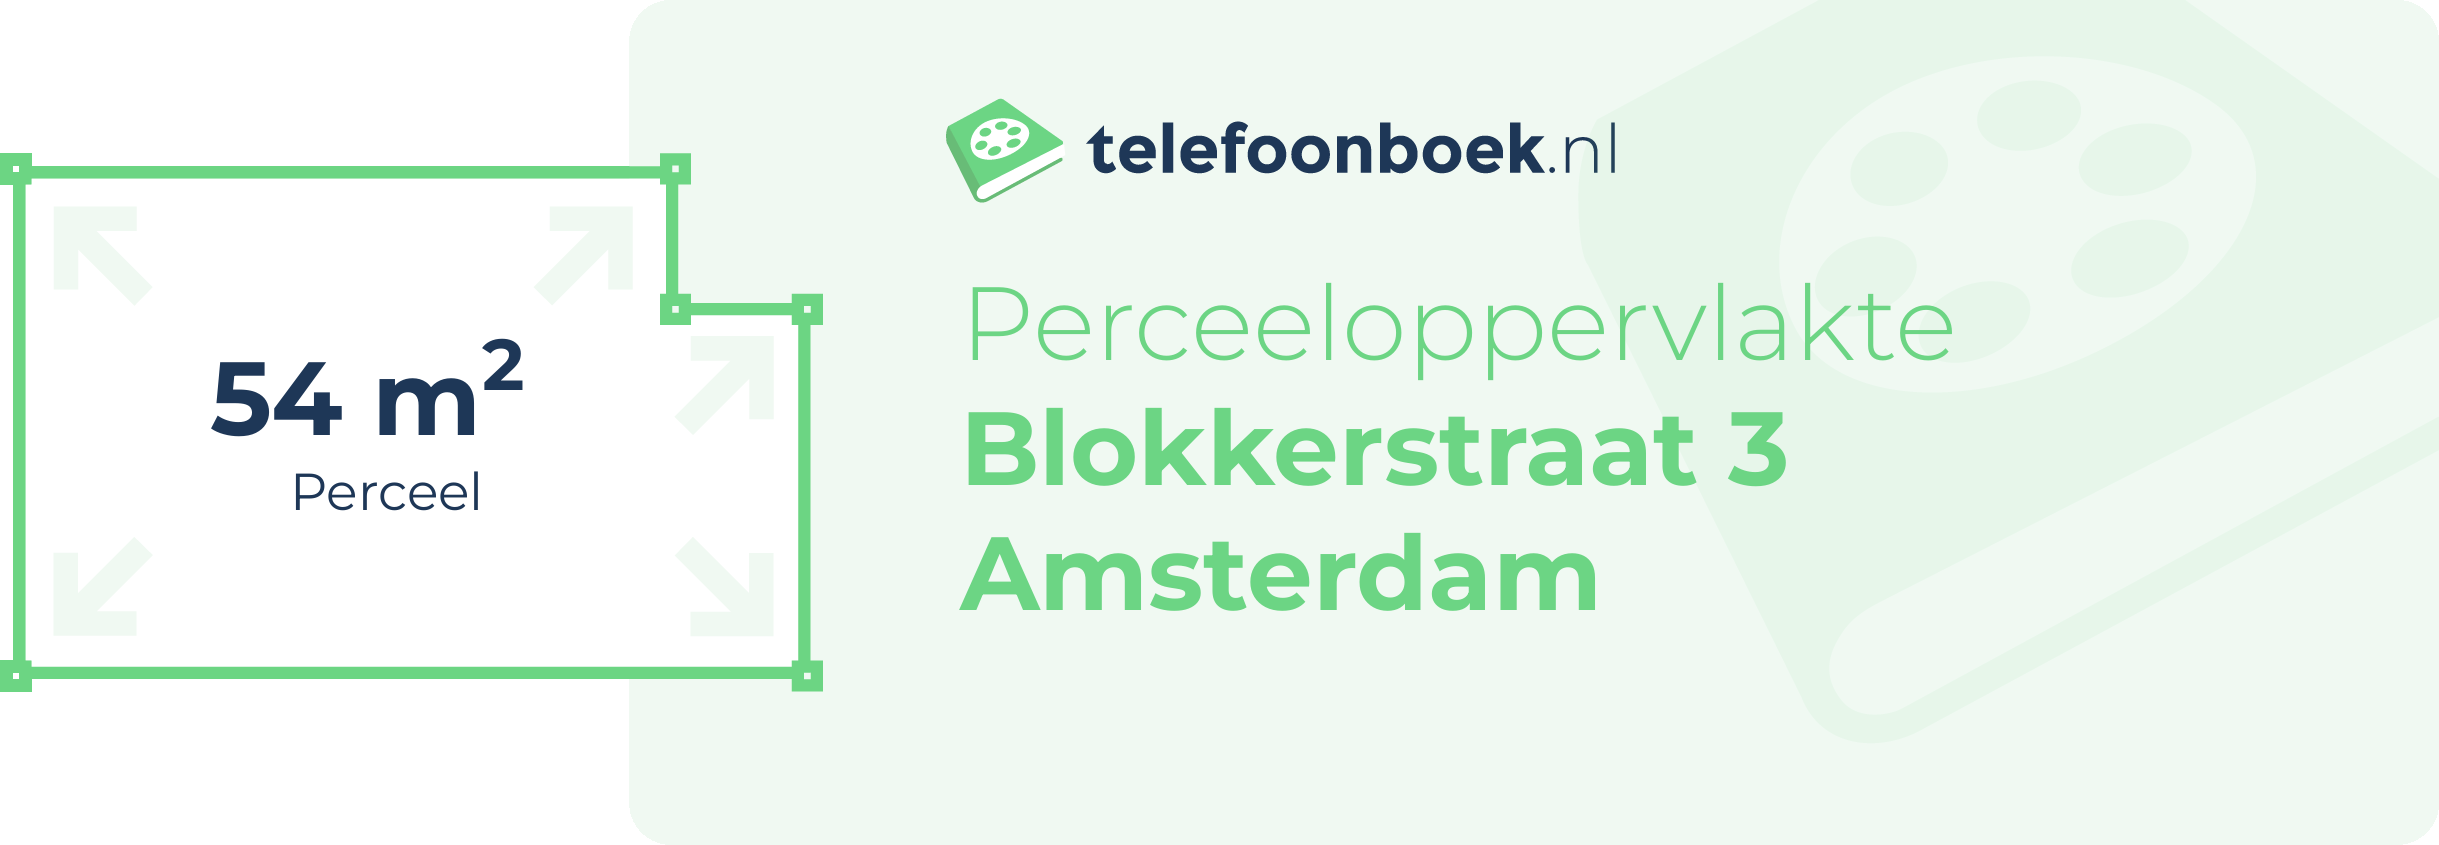 Perceeloppervlakte Blokkerstraat 3 Amsterdam